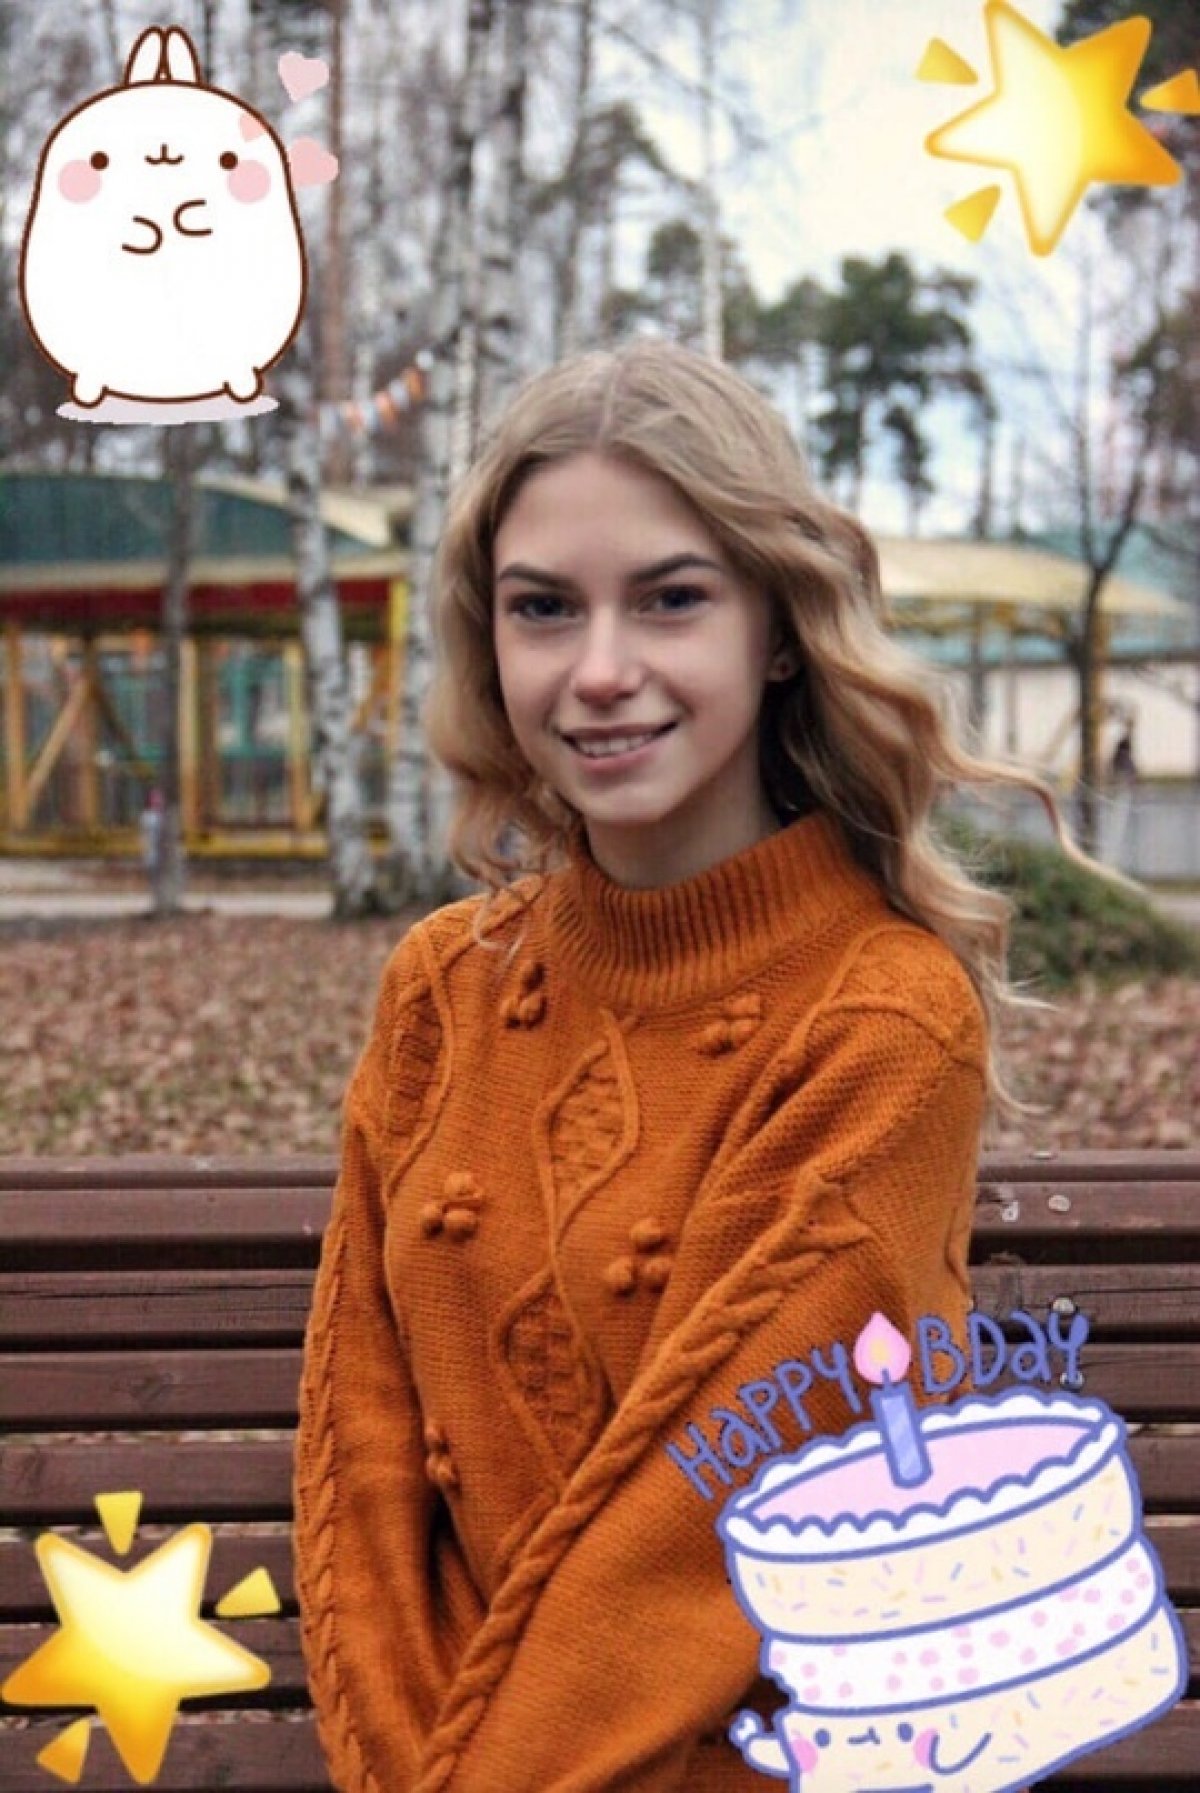 🌸 Дорогие друзья, сегодня празднует свой день рождения один из замечательных людей, секретарь Совета Студентов Анастасия Ермолайчева 🎉